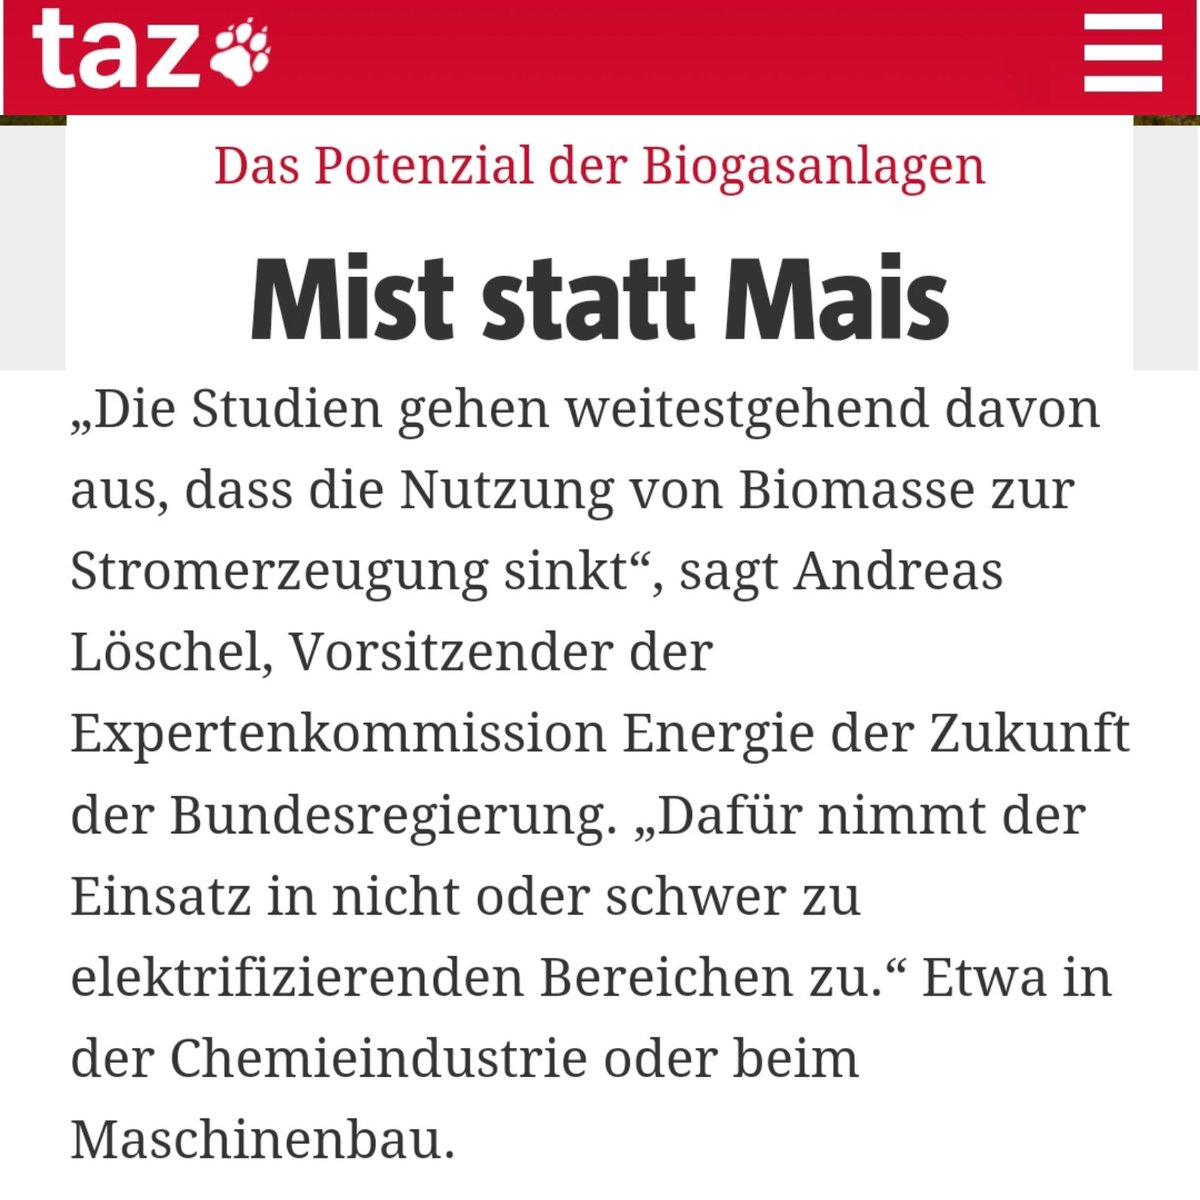 Mist statt Mais. Über das Potenzial von Biogasanlagen habe ich mit Anton Benz für die TAZ @tazgezwitscher gesprochen. 👉 taz.de/Das-Potenzial-…